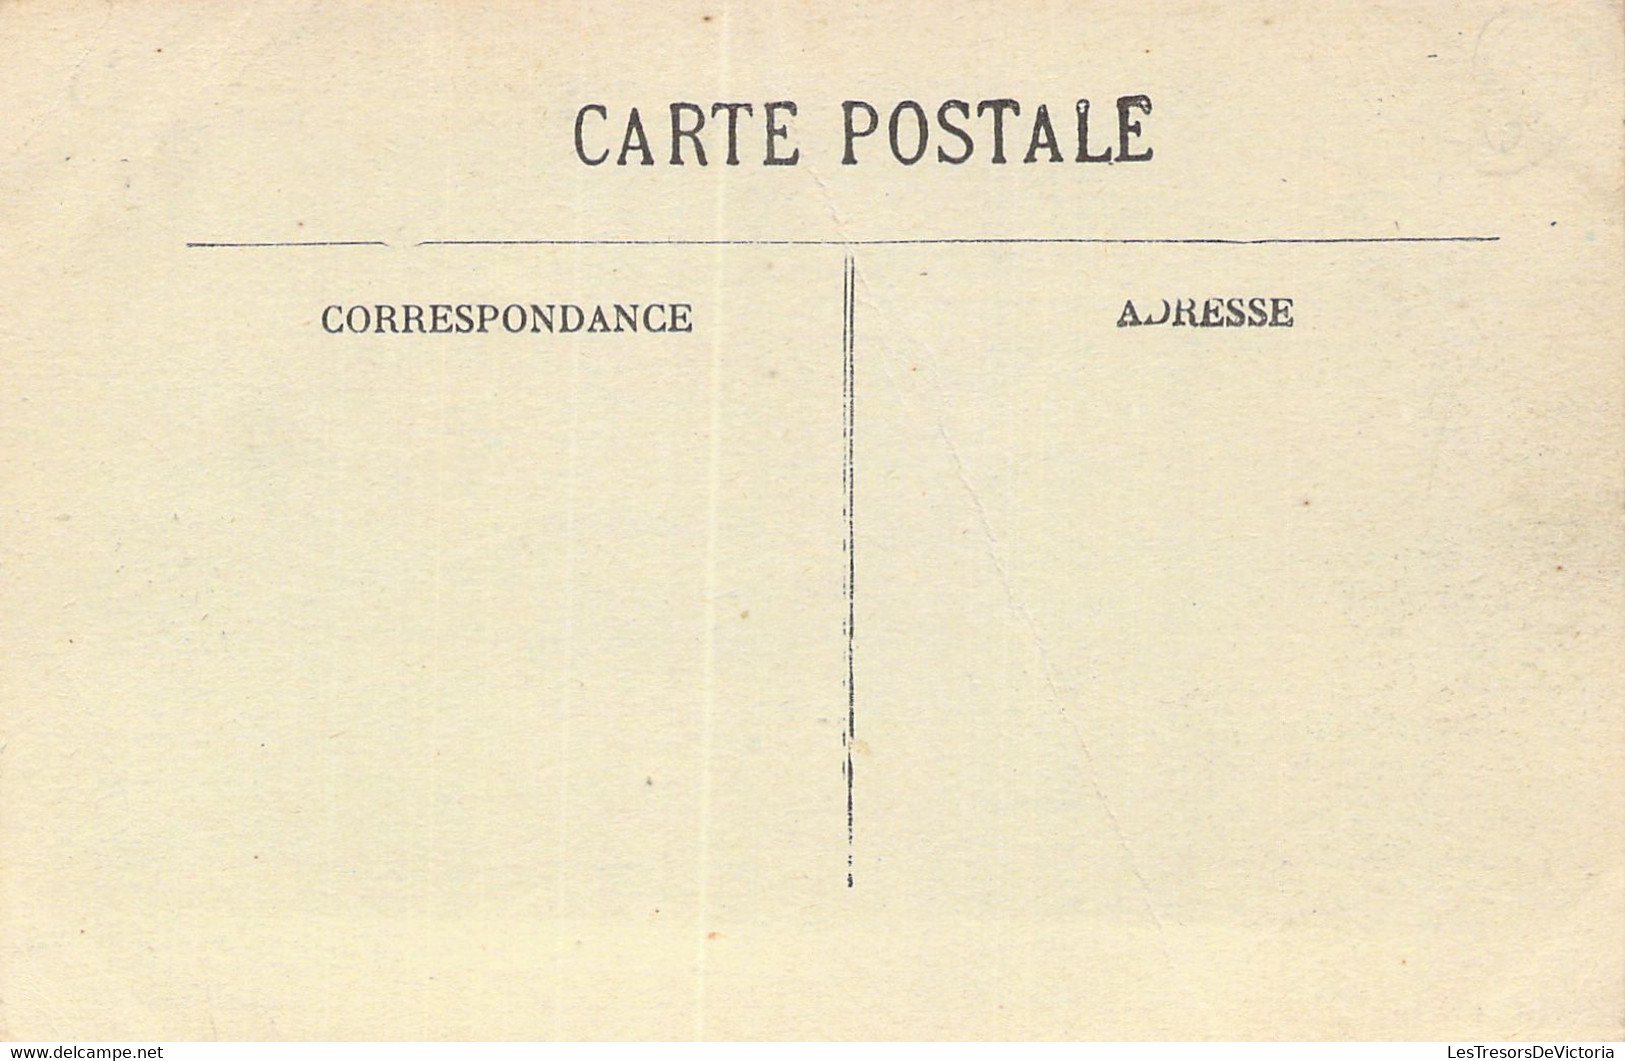 MARCHES - BOURG LASTIC - La Grand'Rue Un Jour De Foire - Carte Postale Ancienne - Mercati